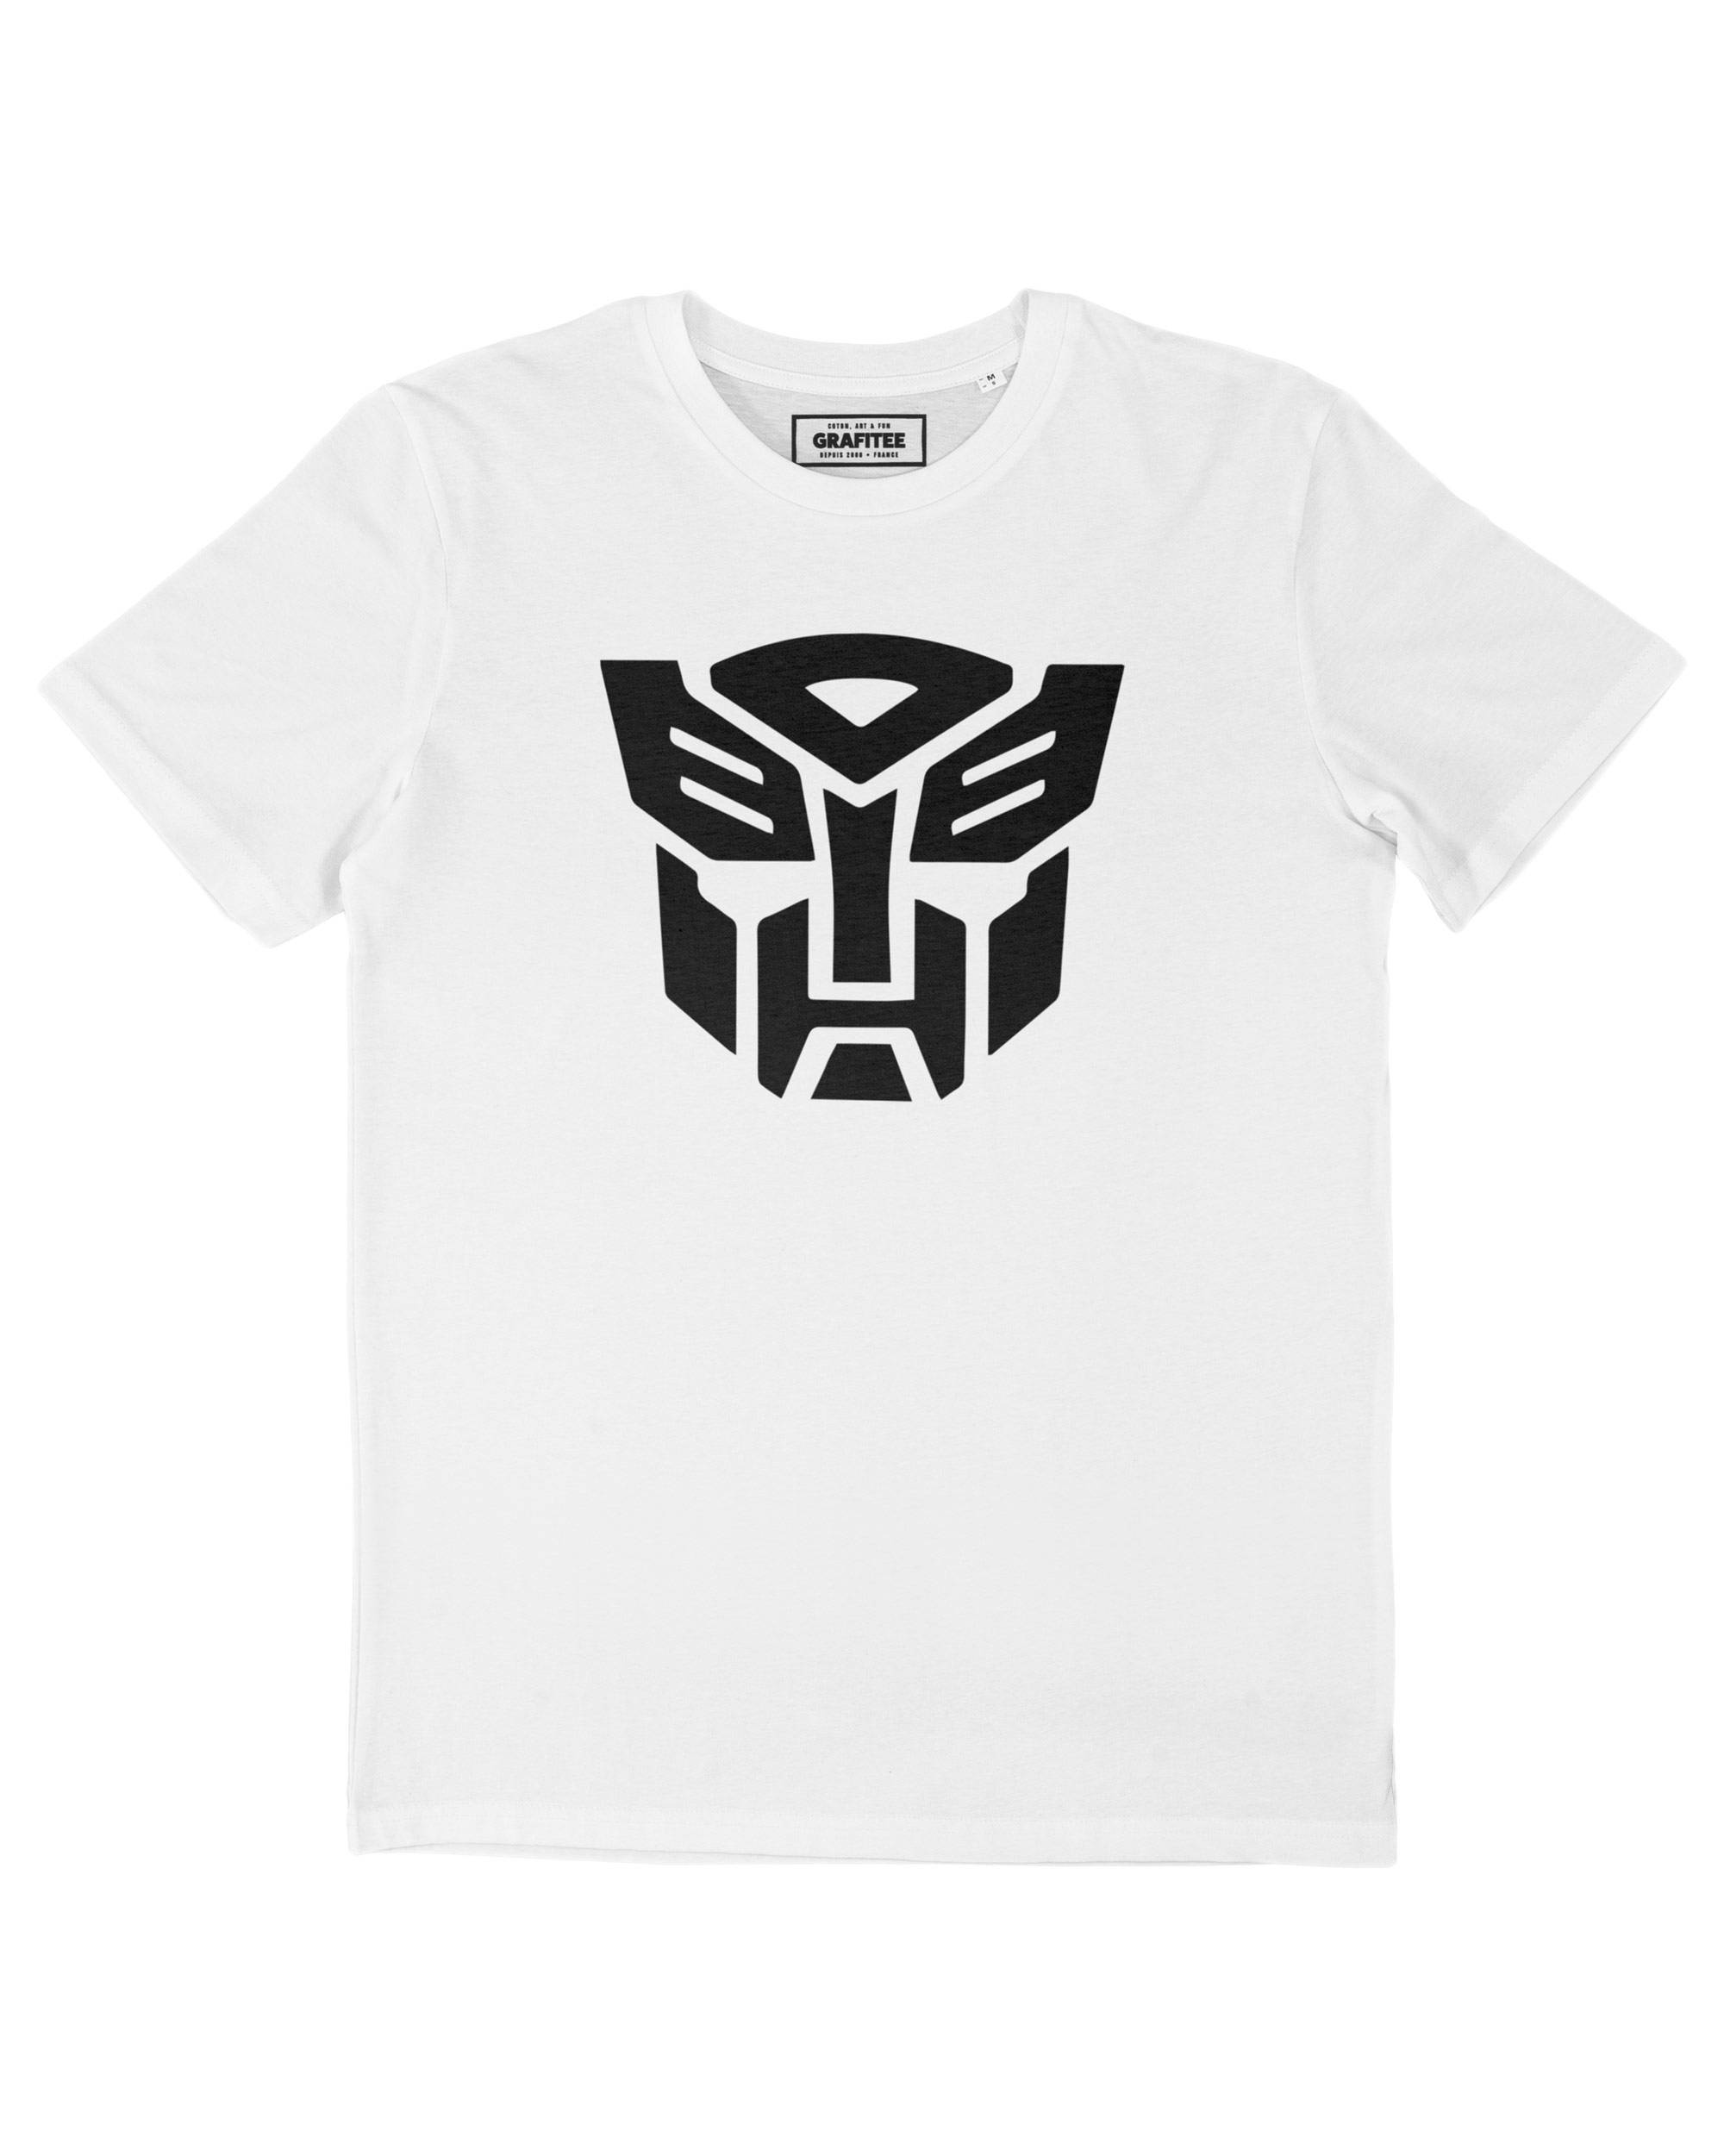 T-shirt Optimus Prime Grafitee